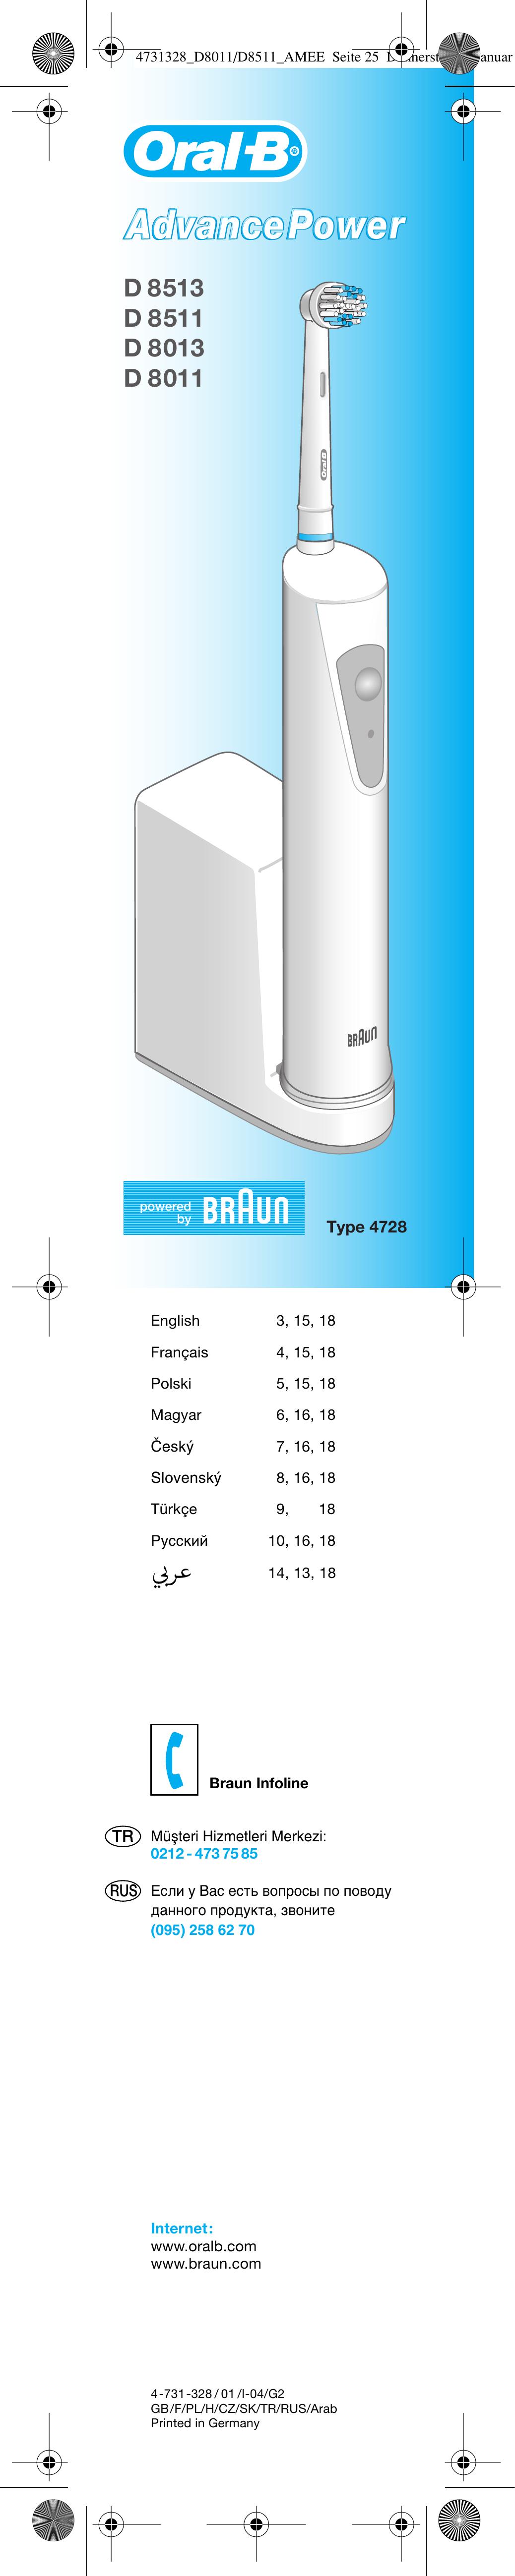 Braun D 8013 Electric Toothbrush User Manual